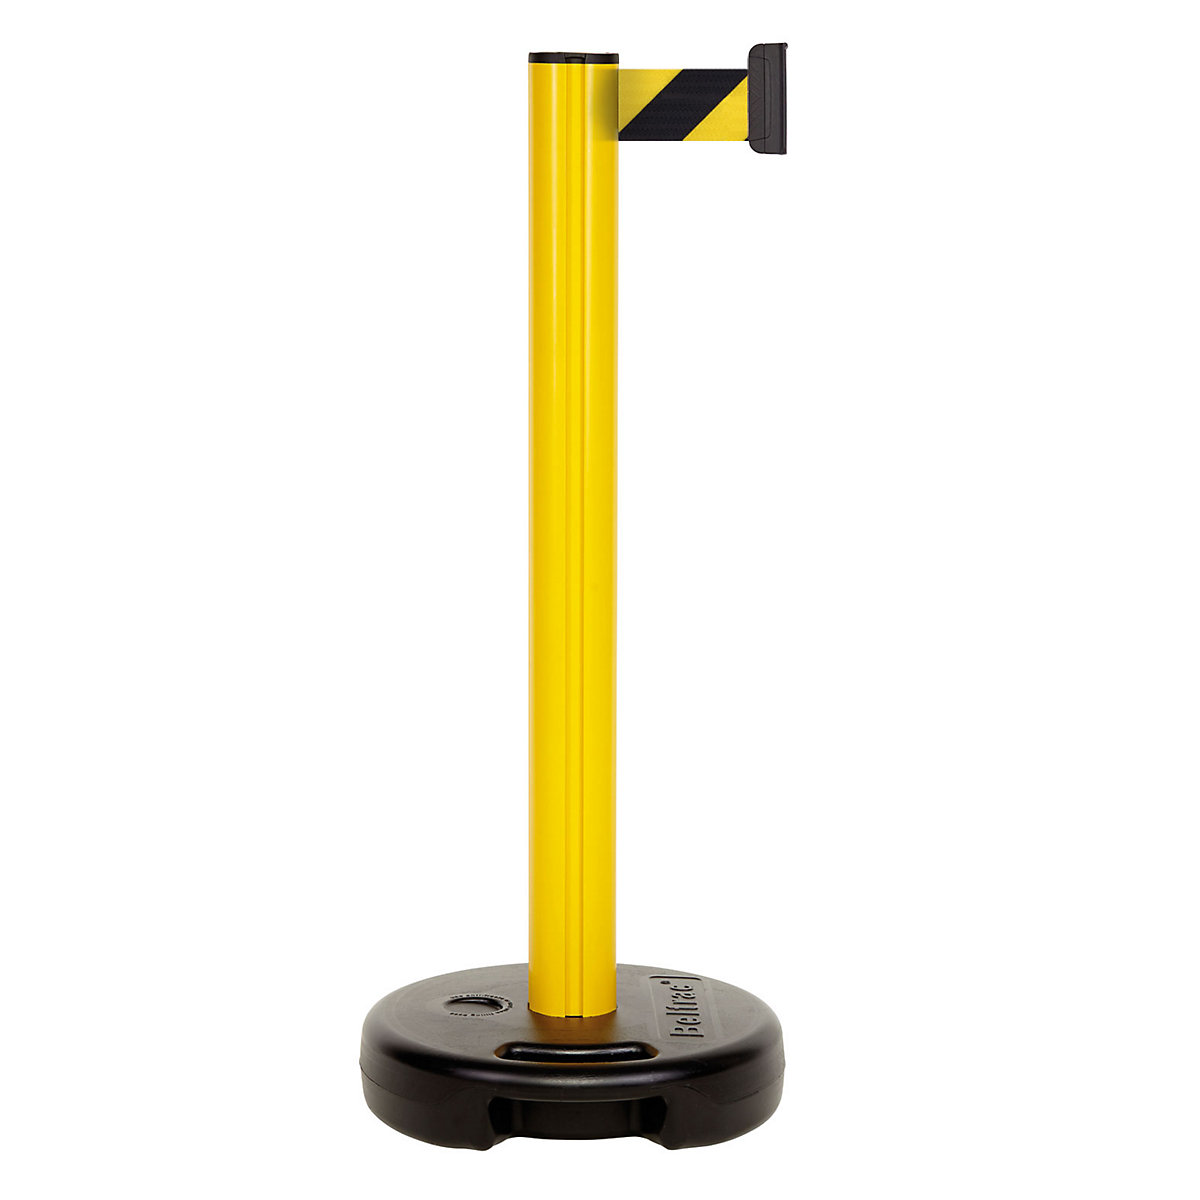 Poste con cinta, de plástico, extracción máx. de cinta 3700 mm, poste amarillo, cinta amarilla / negra